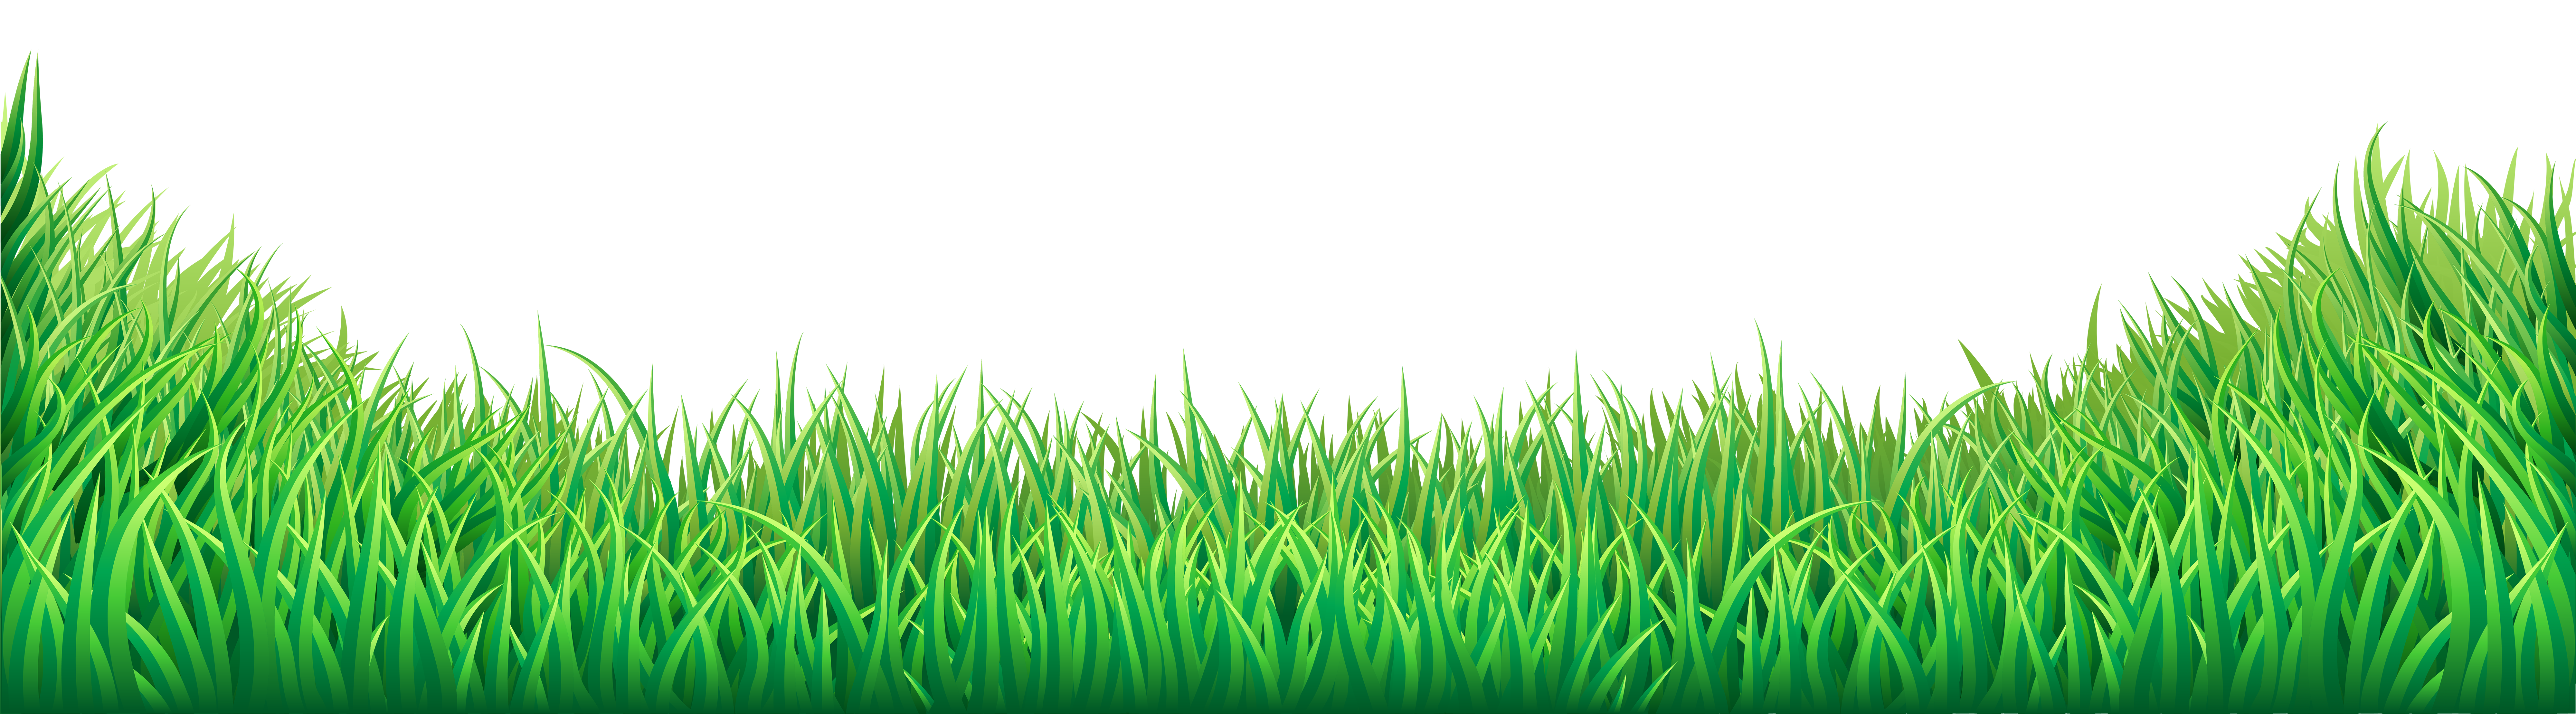 ground clipart green grass